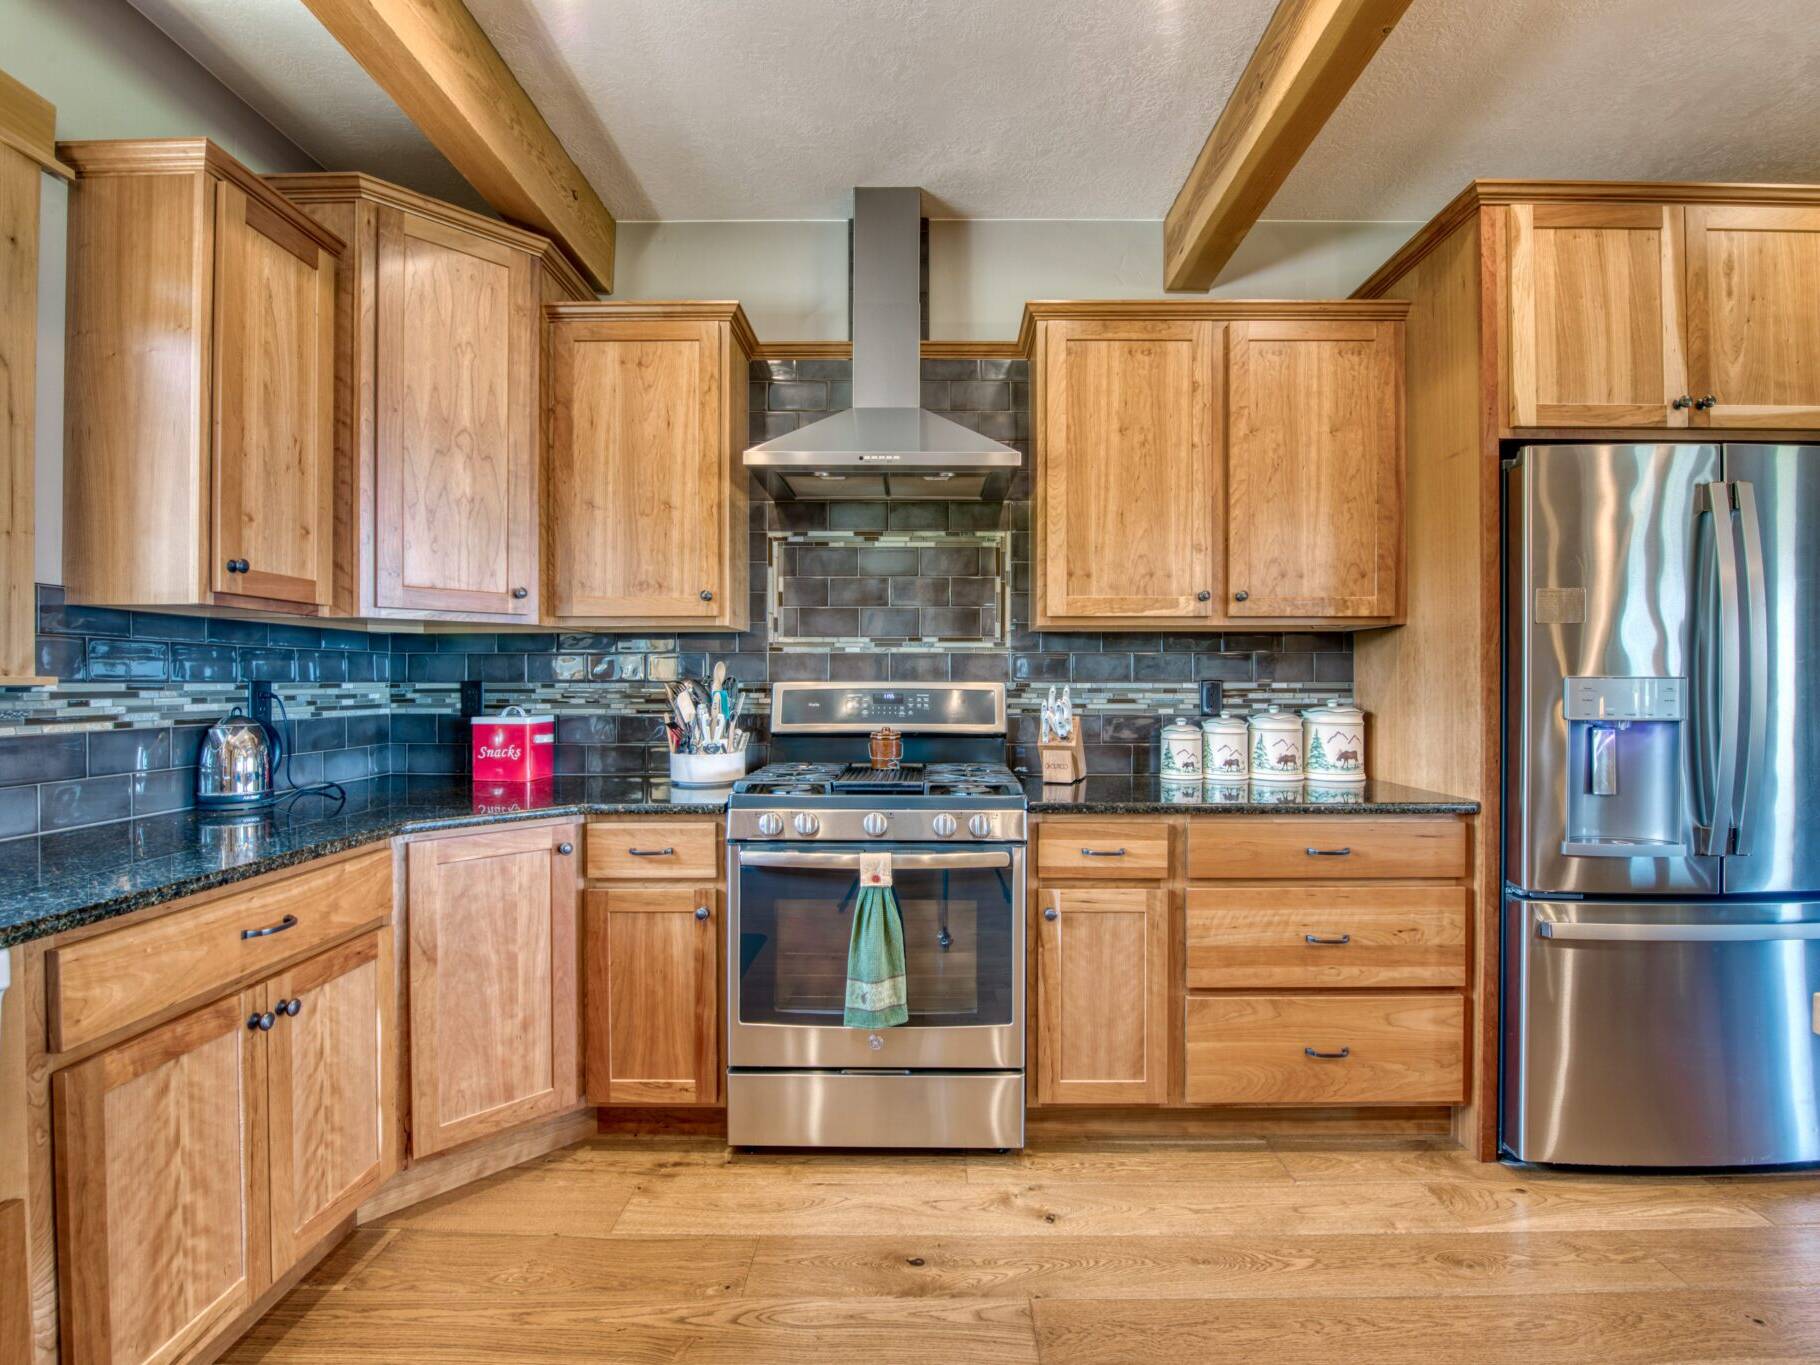 Kitchen gas range with tile backsplash in a custom home built by Big Sky Builders in Stevensville, MT